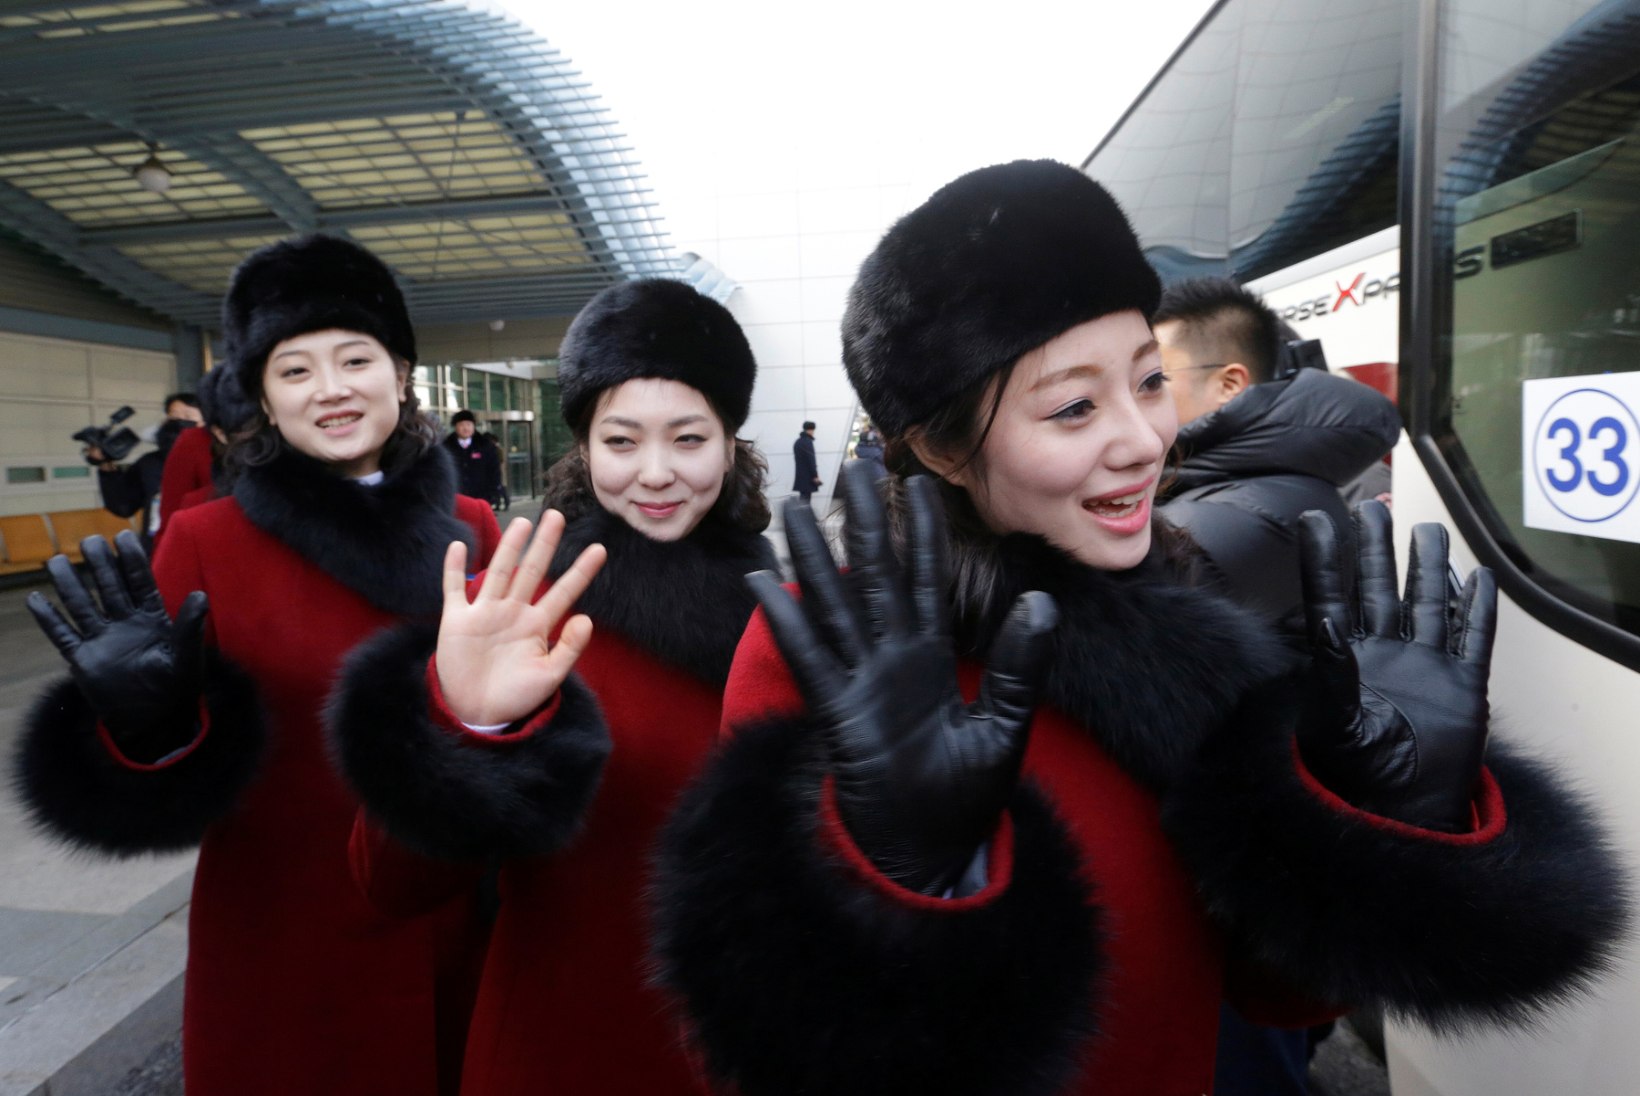 GALERII | Põhja-Korea saadab olümpiale sadu kauneid ergutustüdrukuid